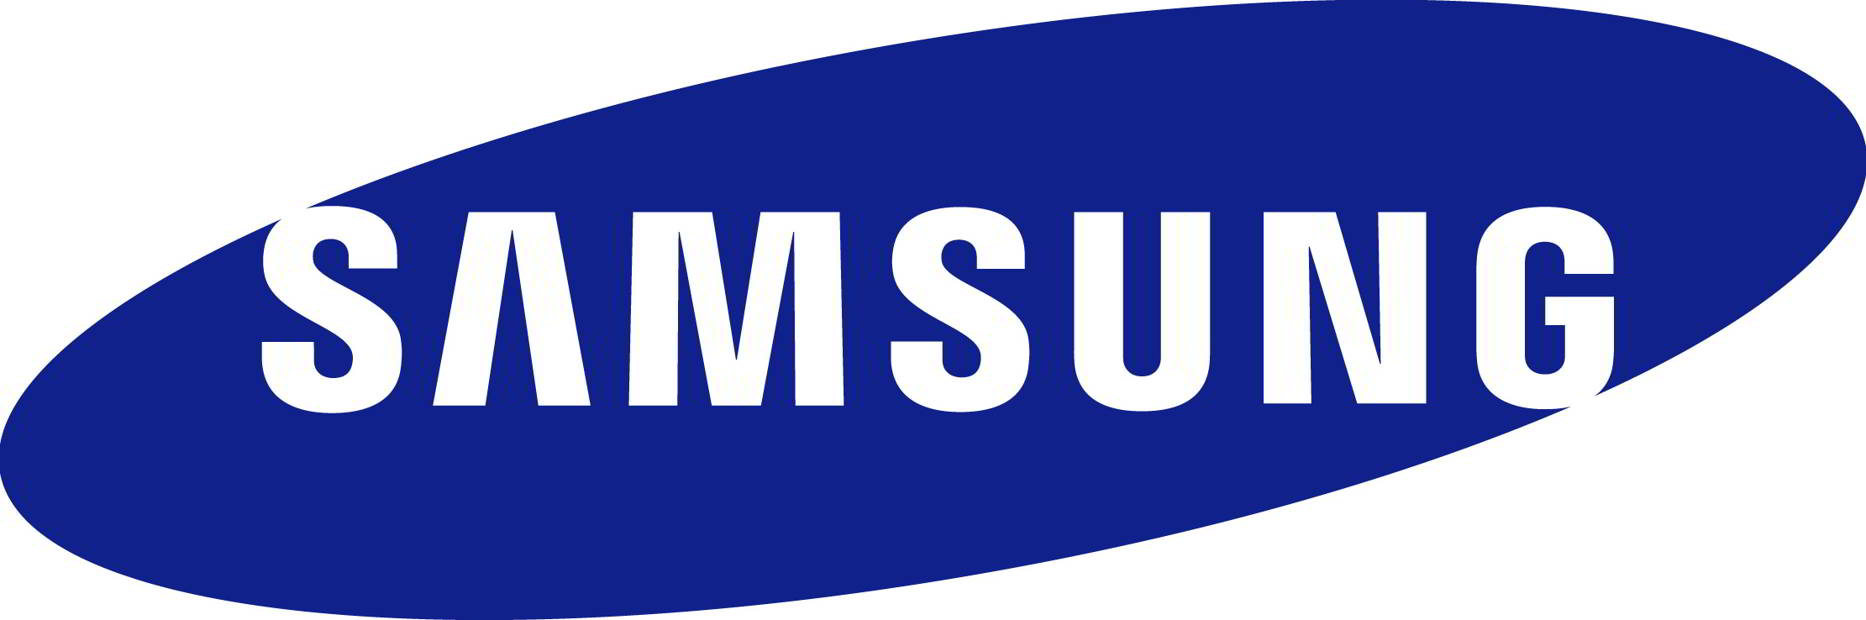 Samsung ar putea renunta la dezvoltarea de smartphone-uri